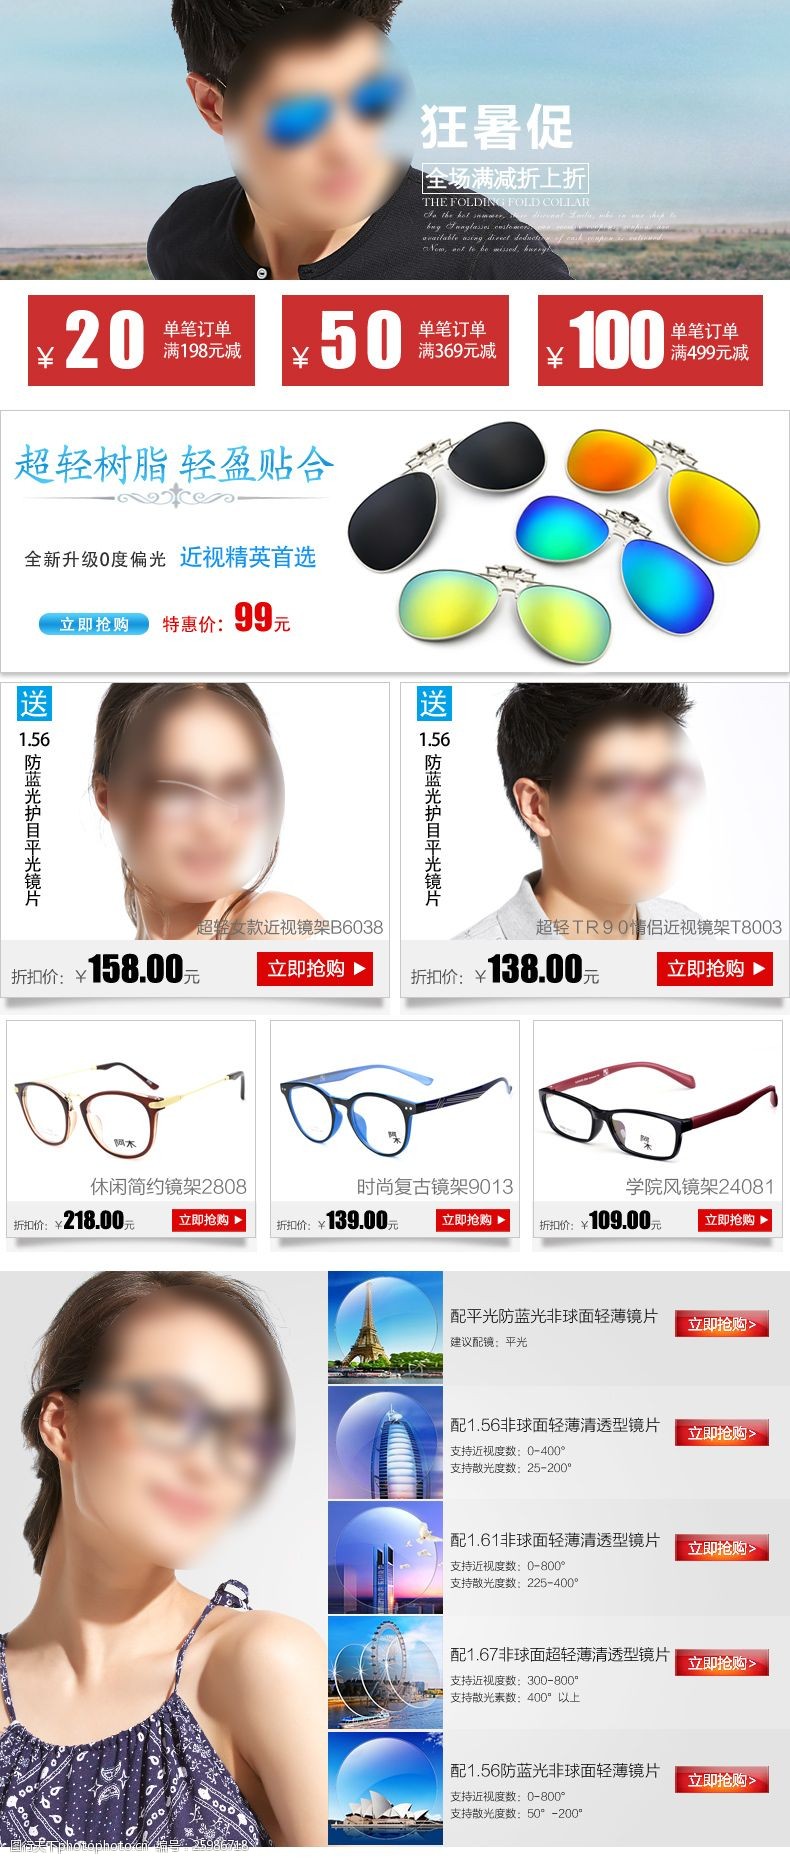 眼镜设计眼镜淘宝宝贝详情关联销售推荐搭配套餐